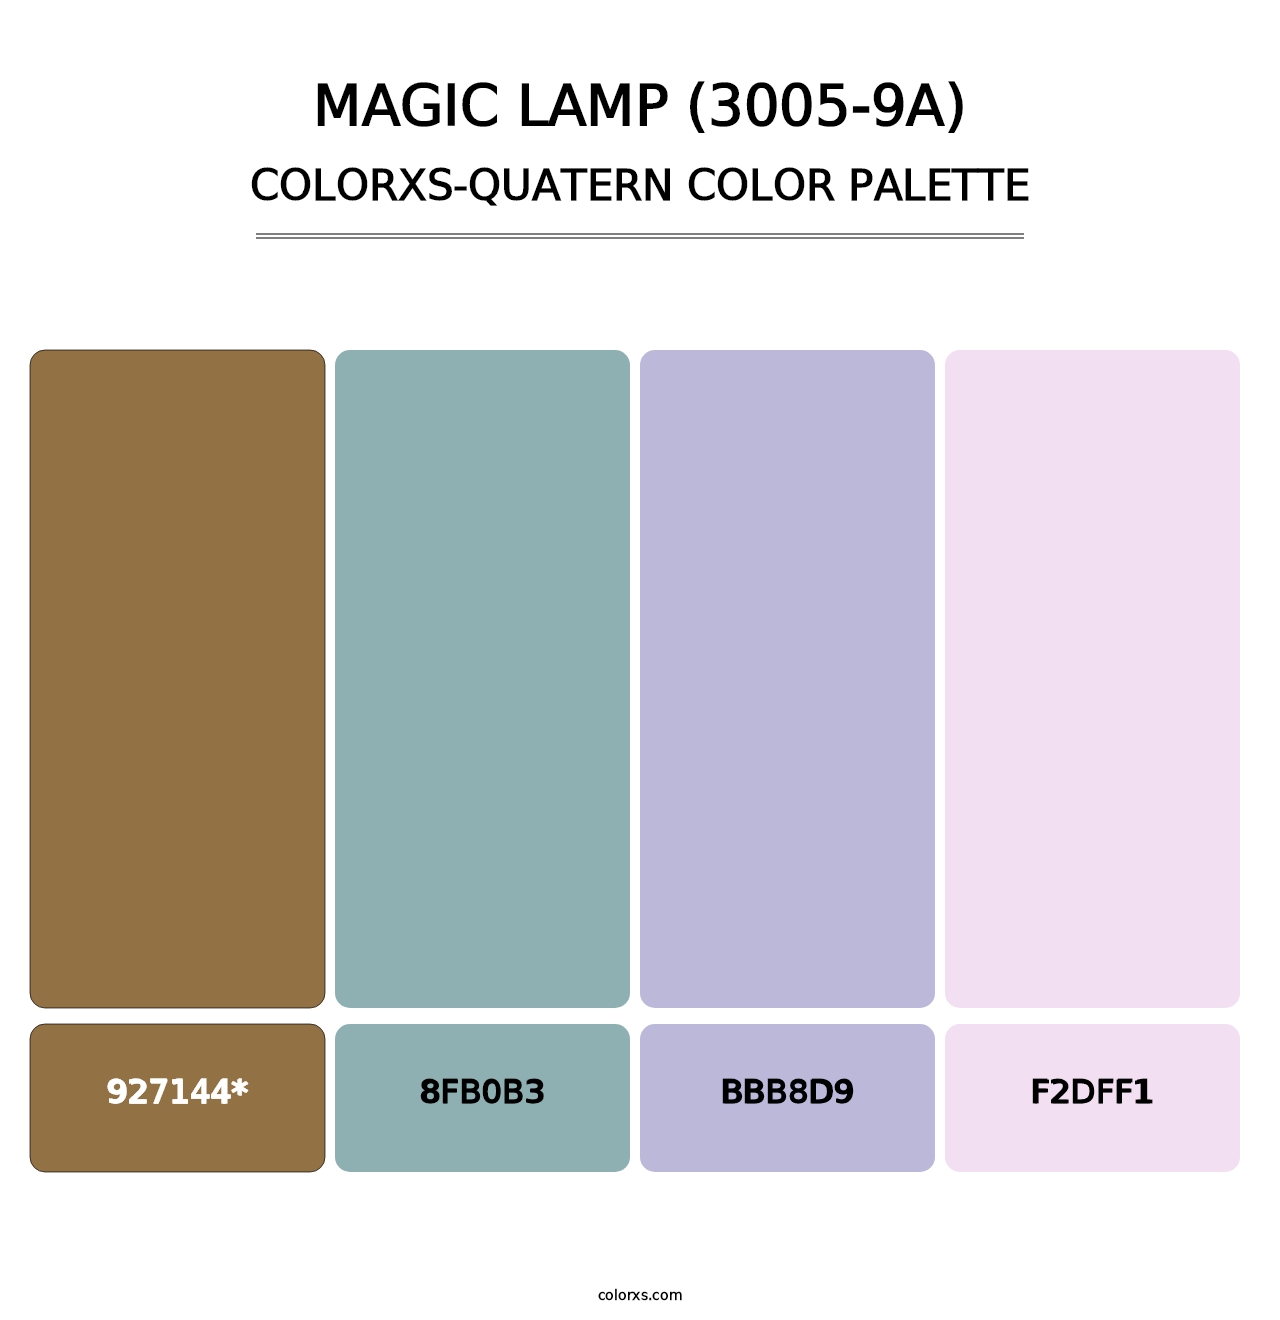 Magic Lamp (3005-9A) - Colorxs Quatern Palette